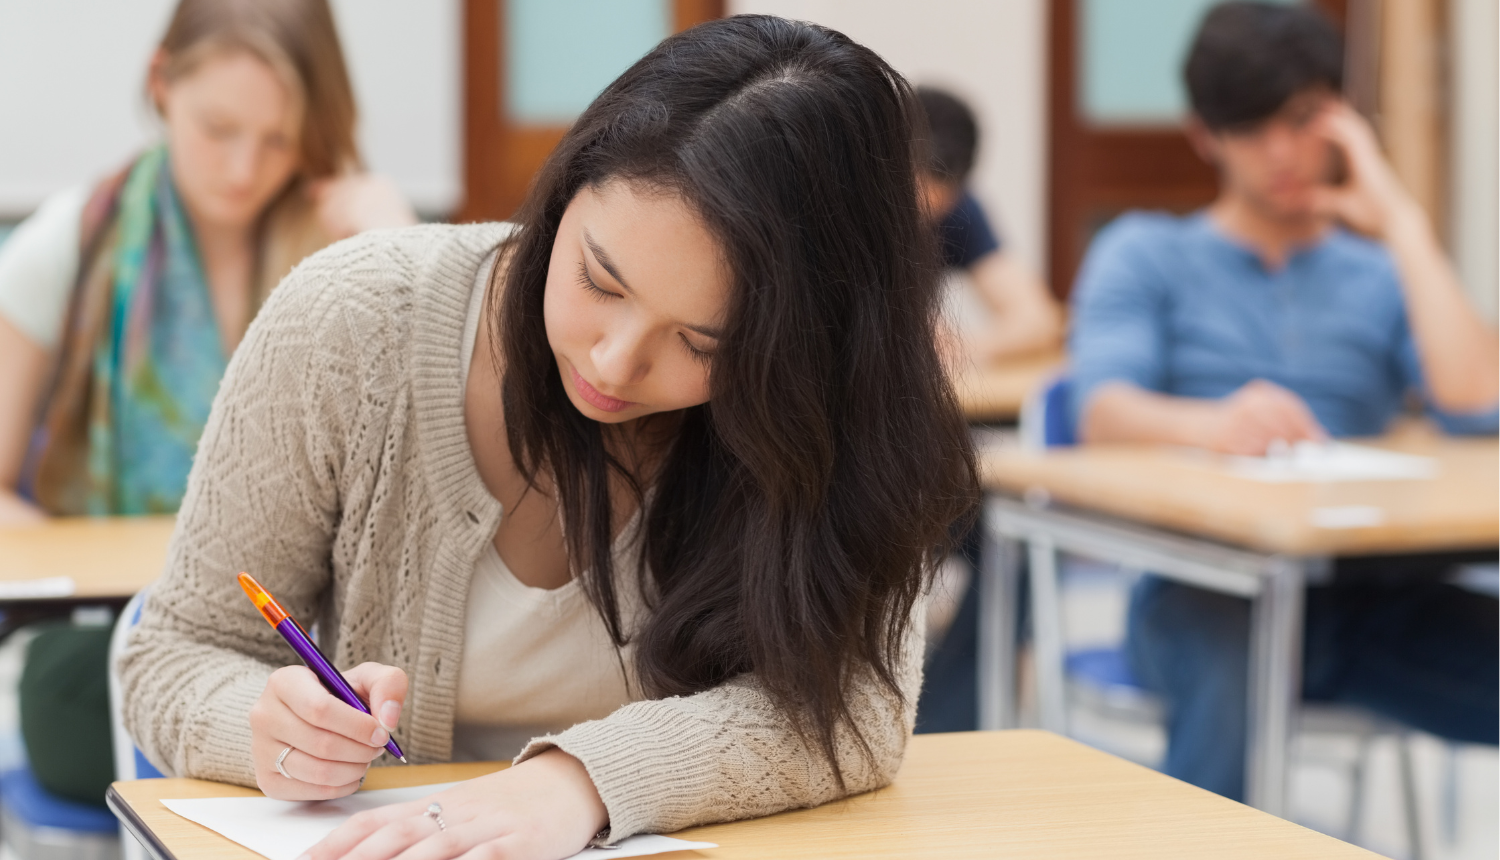 jaunieši klasē raksta eksāmenu, priekšplānā tumšmataina meitene sēž pie galda un raksta uz lapas, roku nolikusi uz lapas